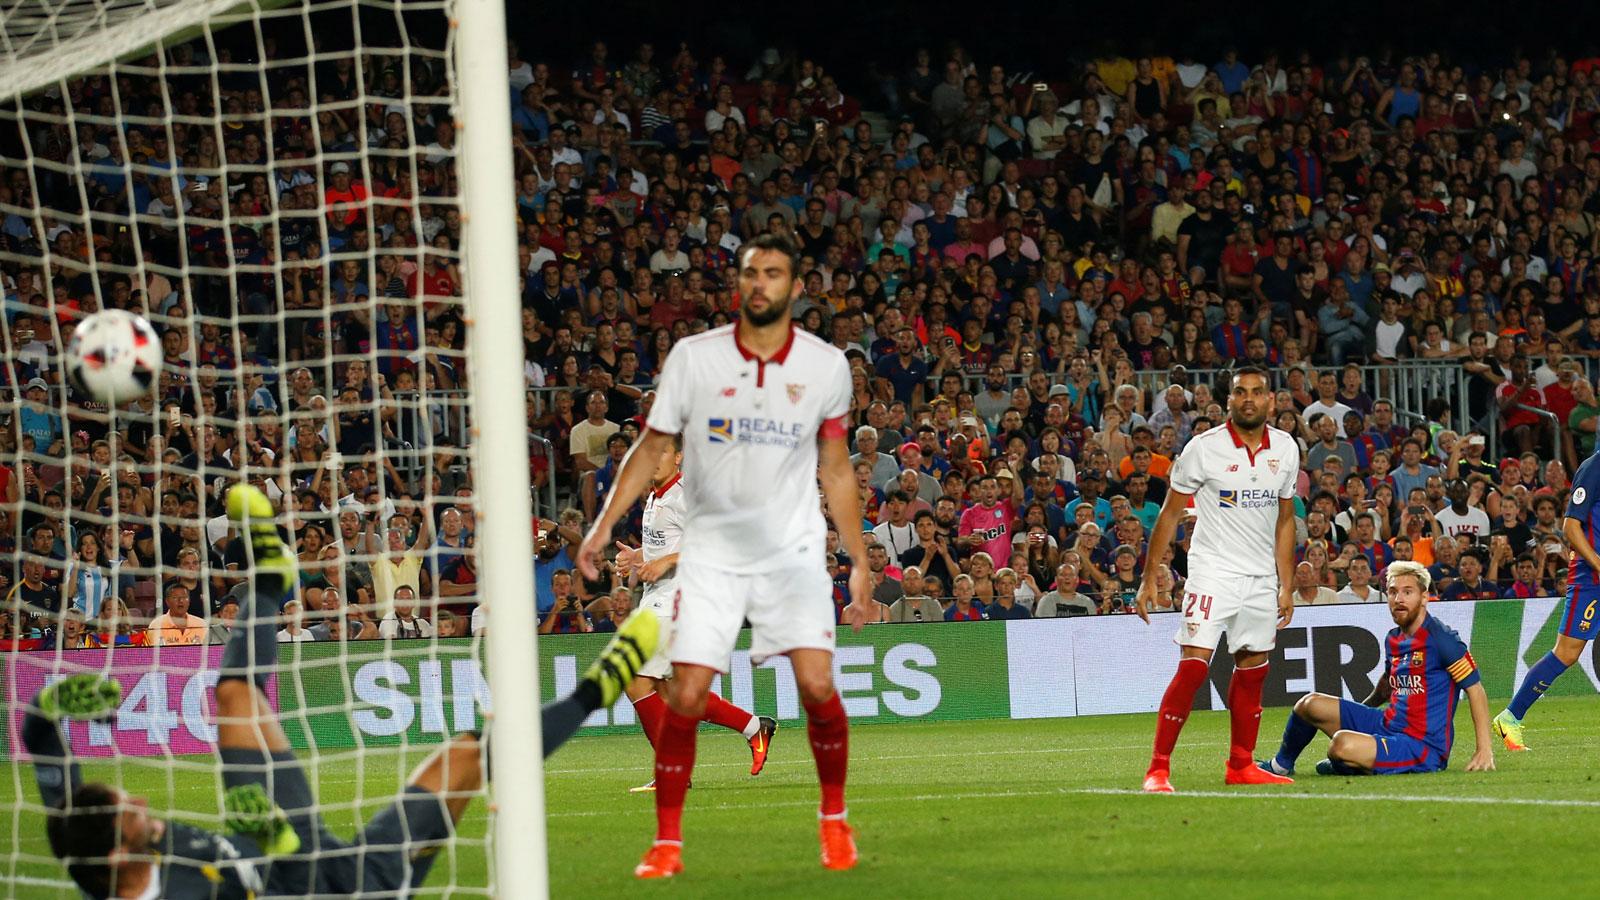 El Sevilla pierde ante un Barcelona crecido en casa